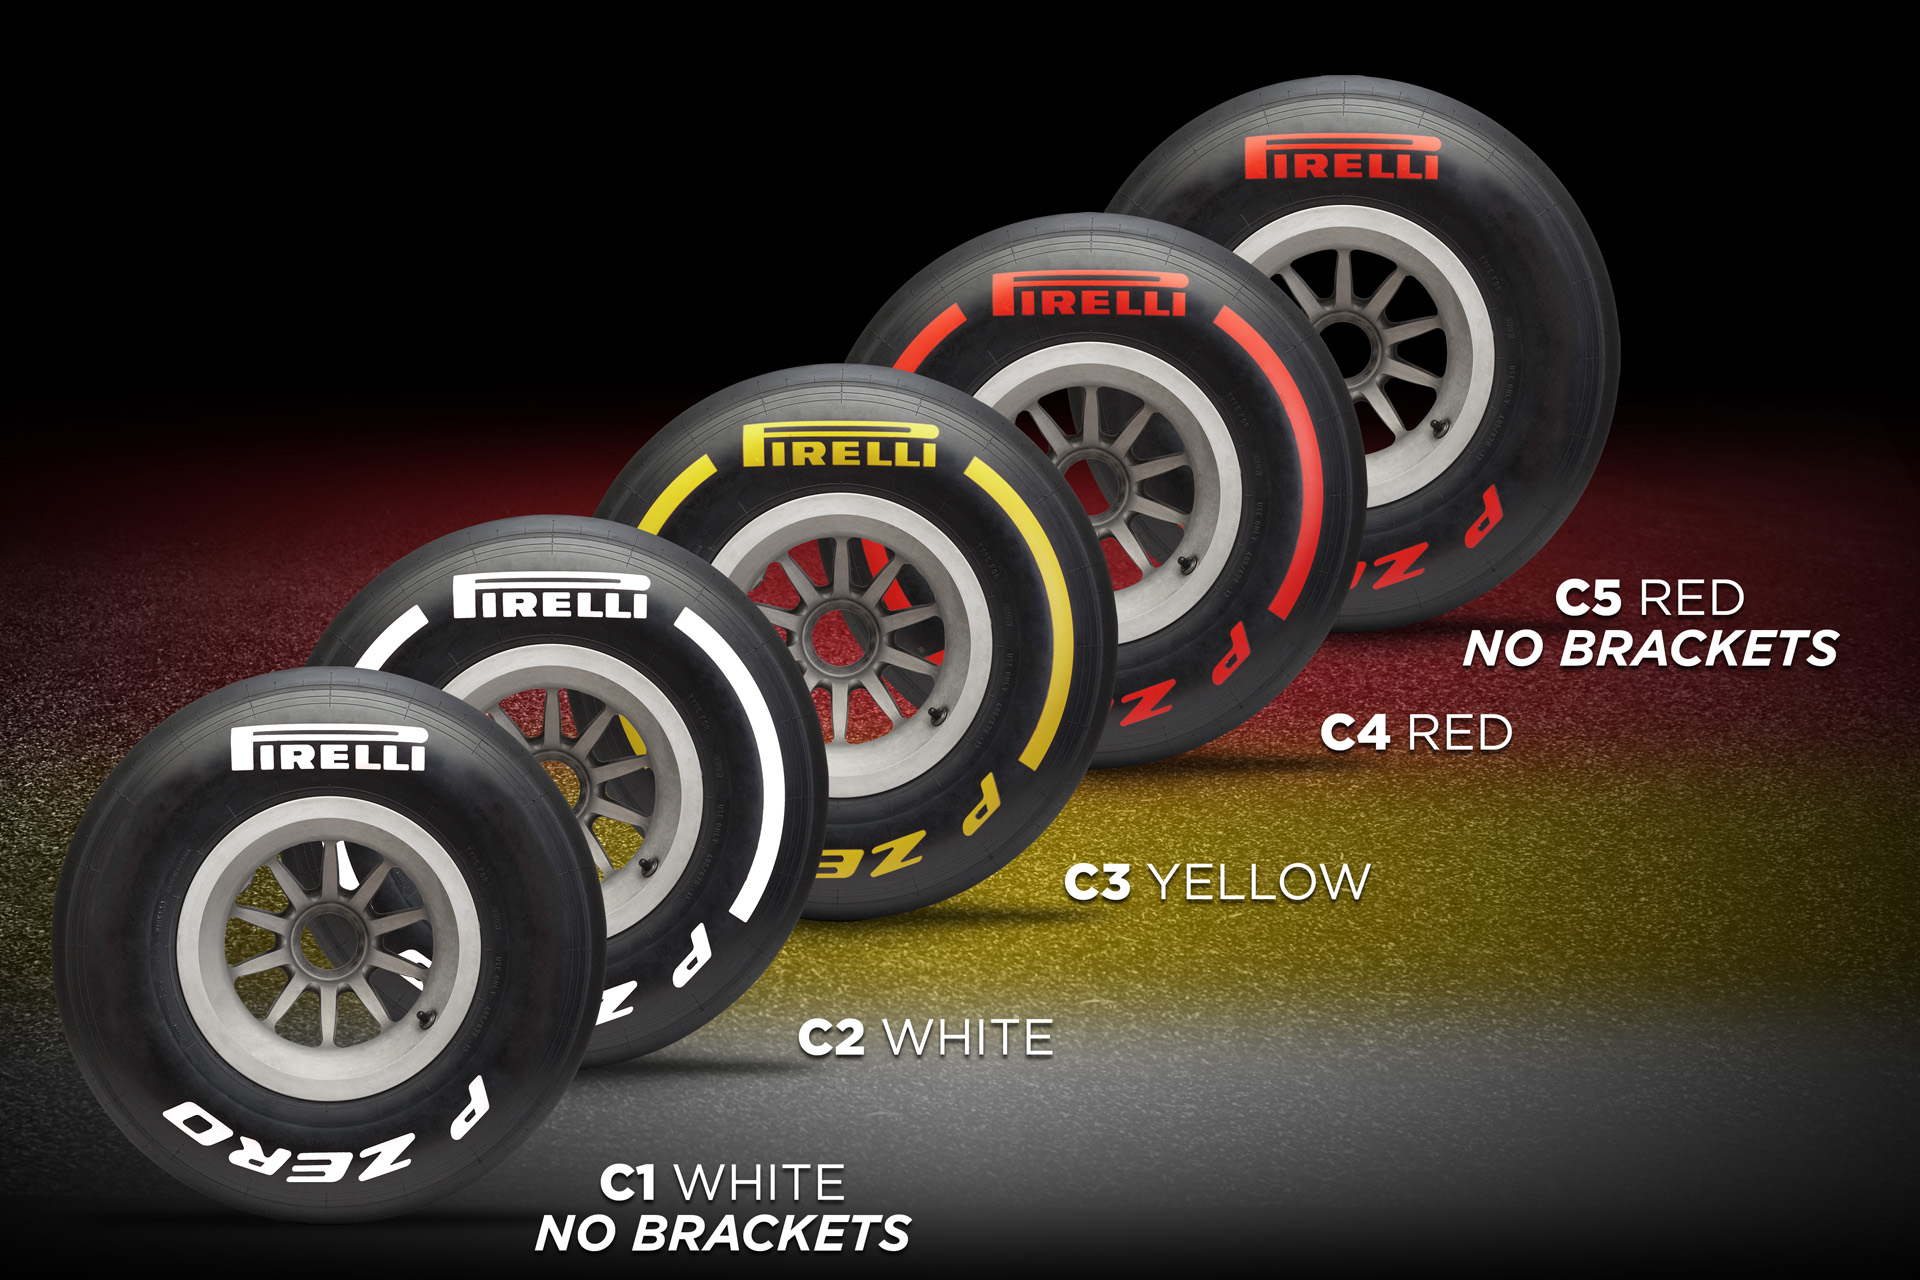 Pirelli tyre colours for 2019 pre-season testing